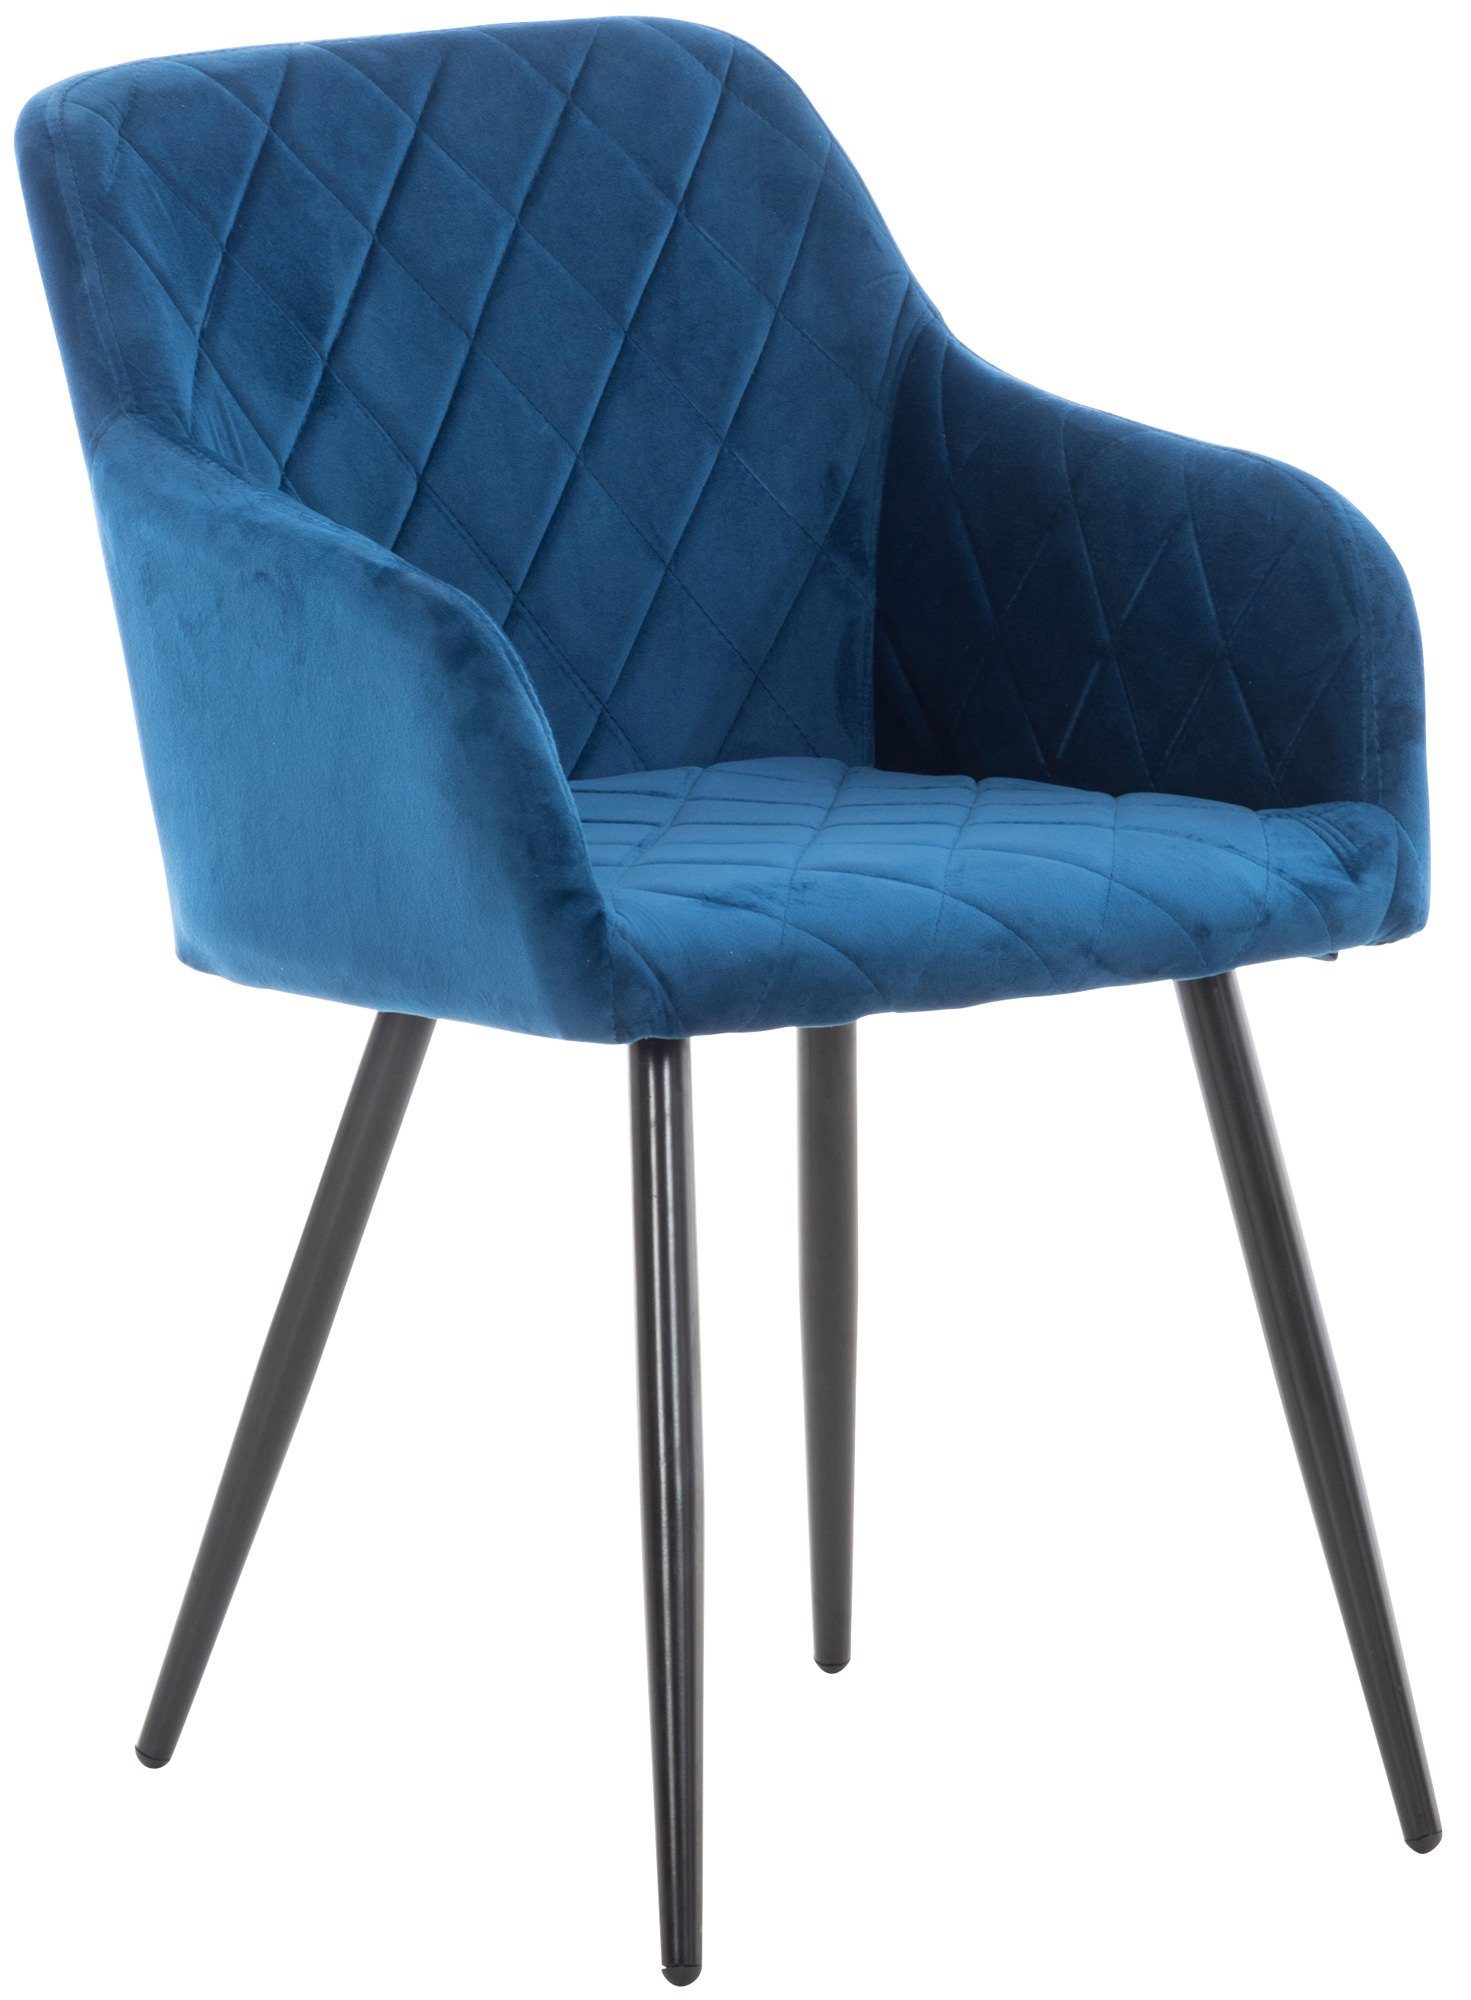 TPFLiving Esszimmerstuhl Shyva mit hochwertig gepolsterter Sitzfläche - Konferenzstuhl (Küchenstuhl - Esstischstuhl - Wohnzimmerstuhl - Polsterstuhl), Gestell: Metall schwarz - Sitzfläche: Samt blau